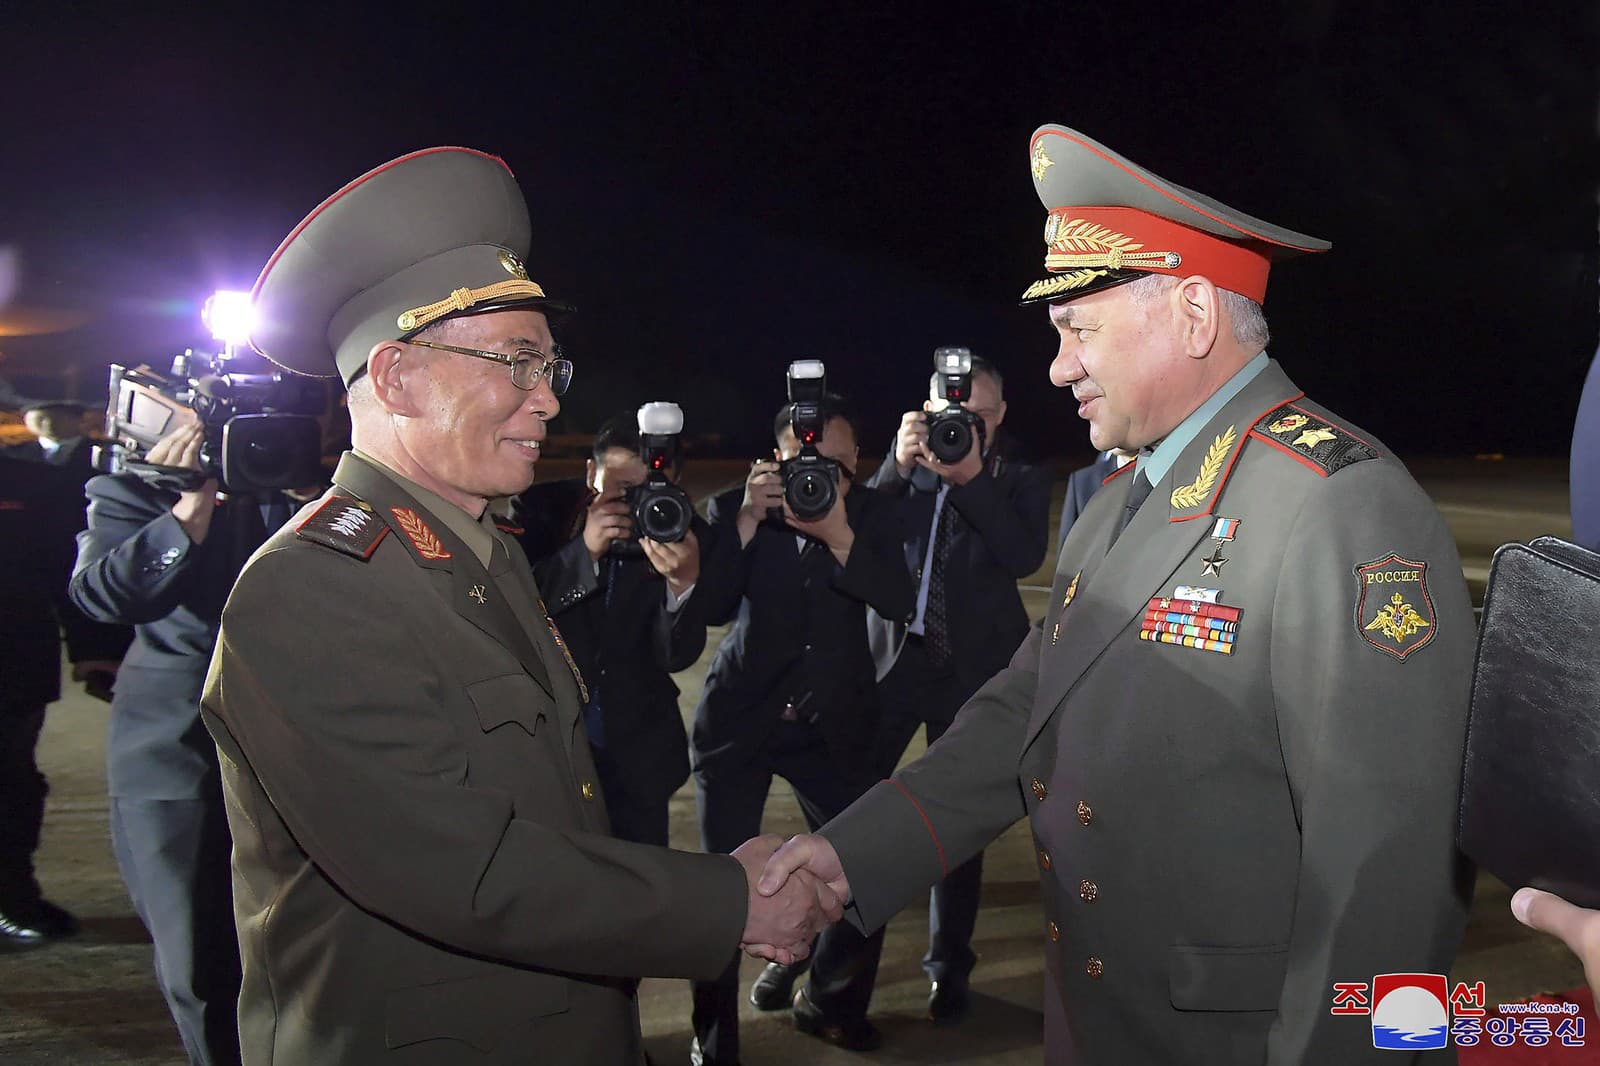 Sergej Šojgu pricestoval do Severnej Kórey